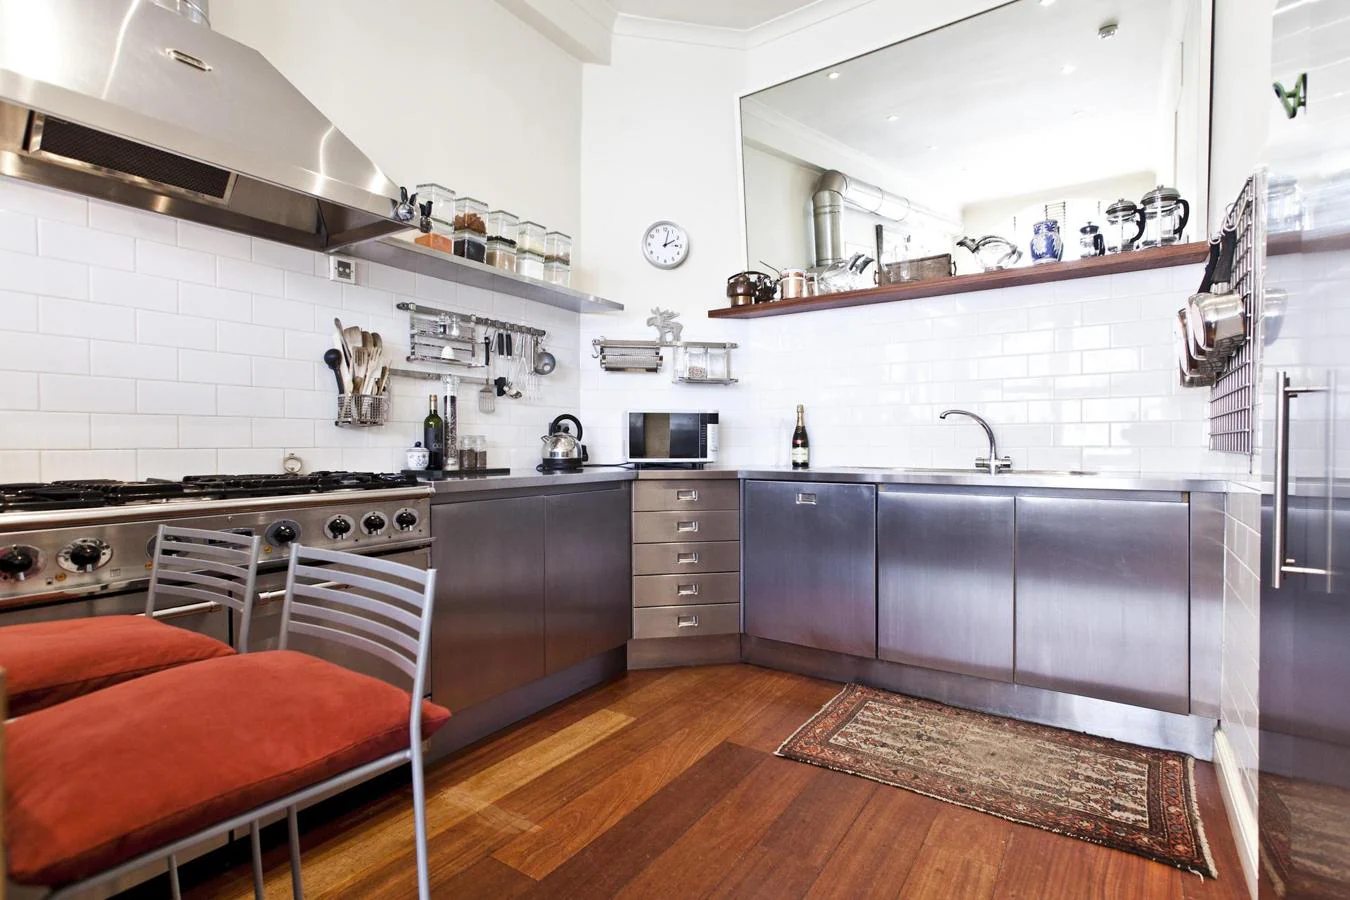 Lujo. Aparentemente, el apartamento tiene un diseño simple, nada ostentoso. Pero tanto su cocina chef como los acabados son de primeras calidades